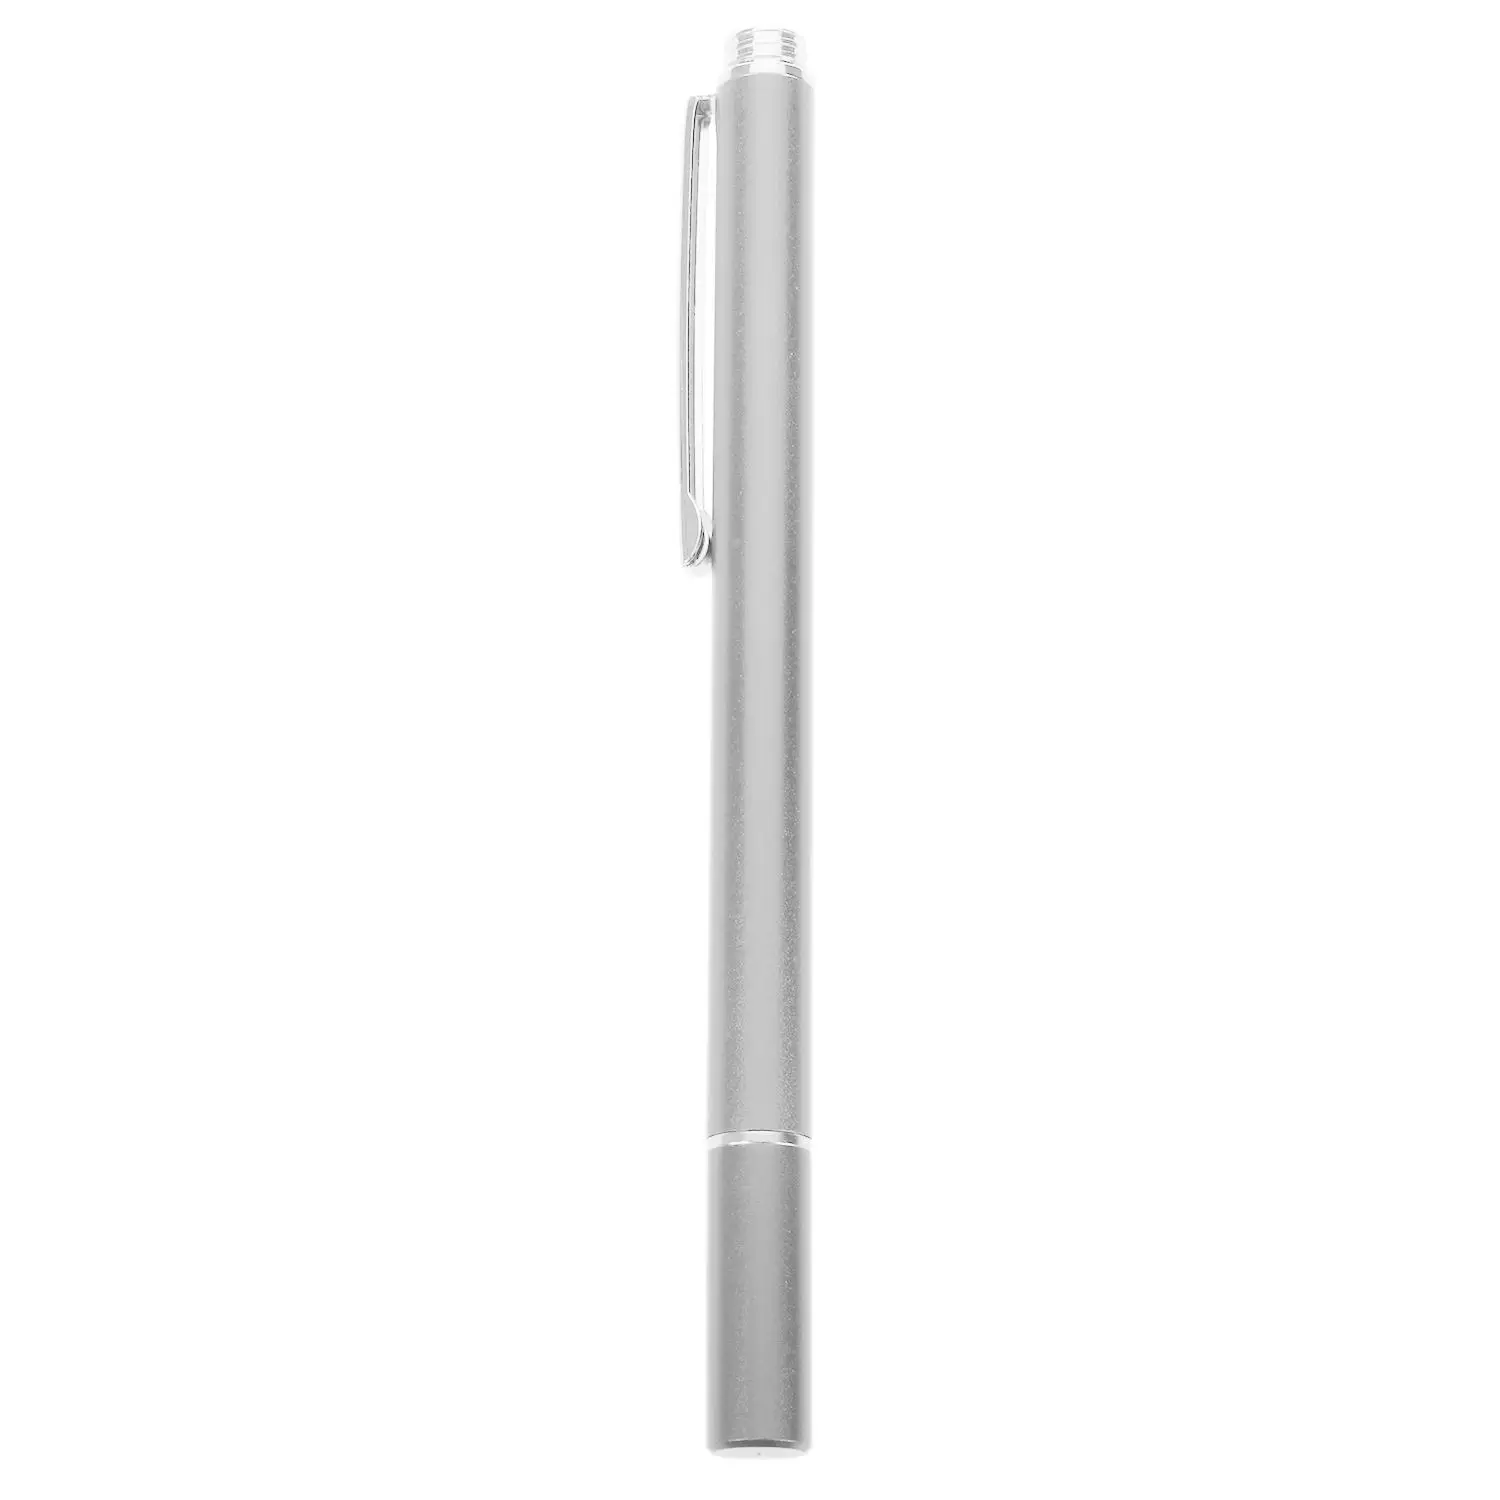 Горячая новинка 12,5 см тонкий круглый емкостный стилус для планшета стилус для iPad/air/mini Высокое качество